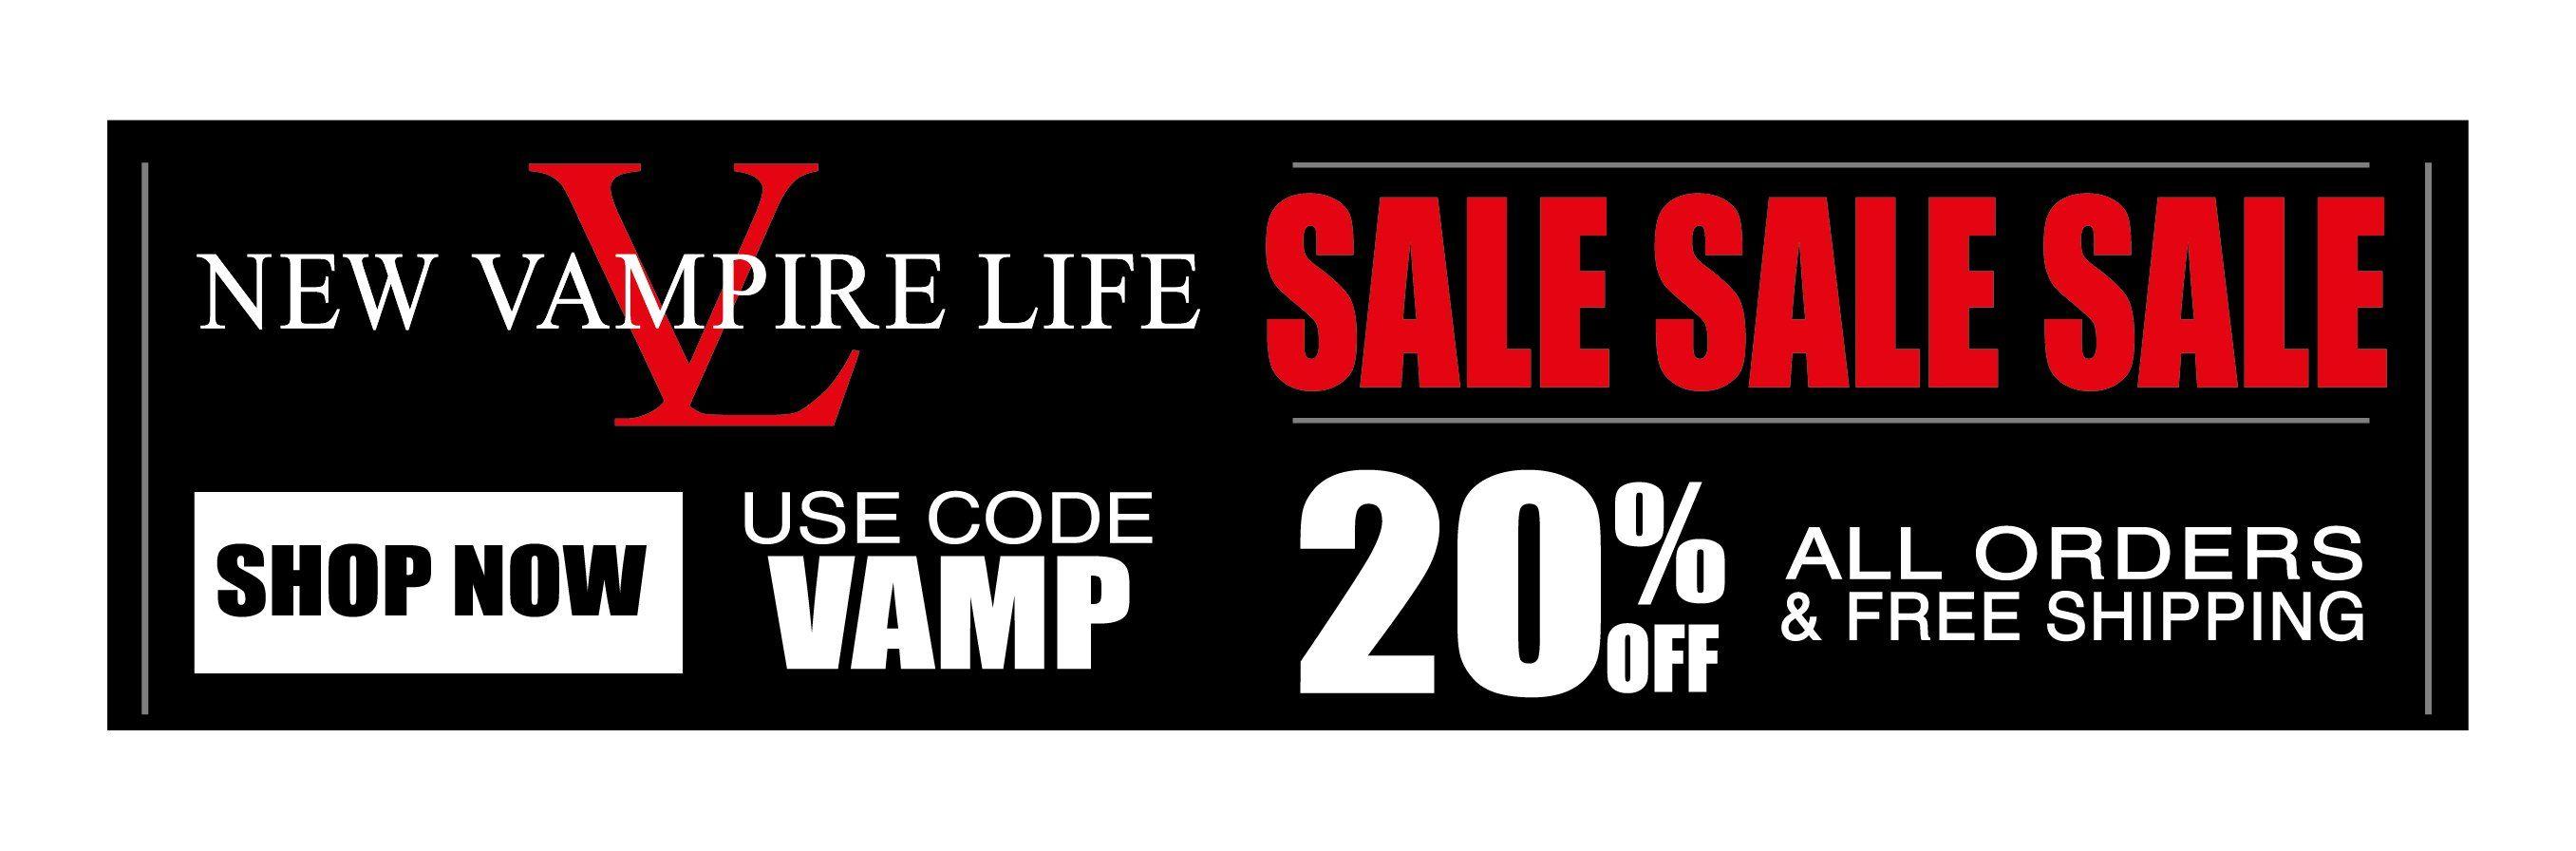 Vampire Life Logo - Vampire Life – New Vampire Life